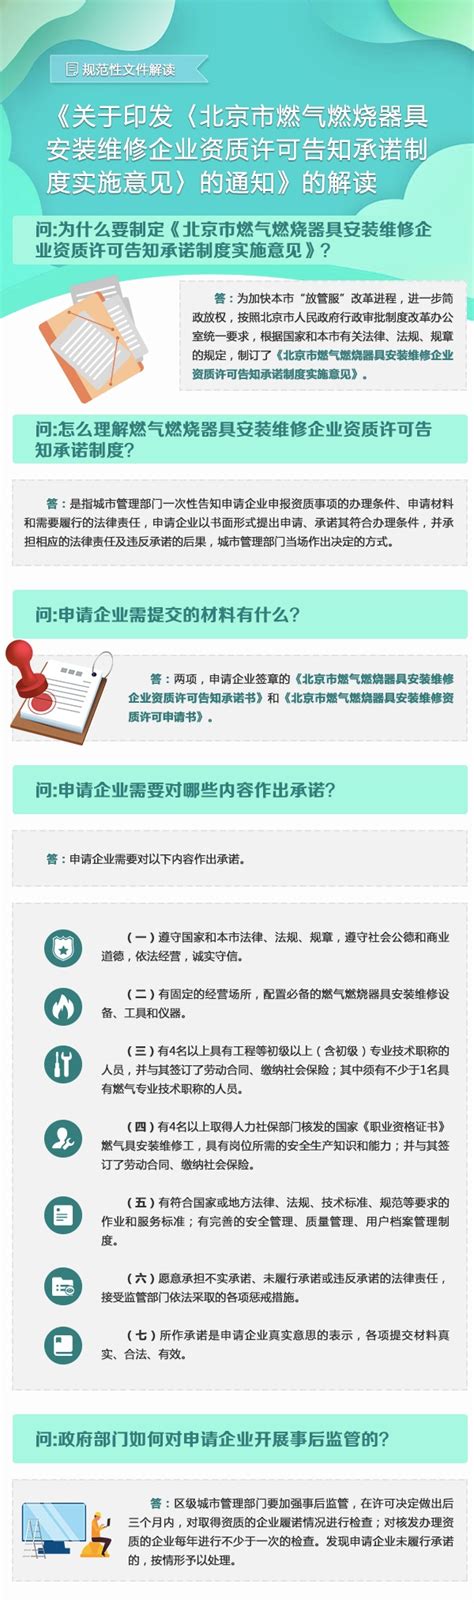 浙江省燃气管理条例图册_360百科